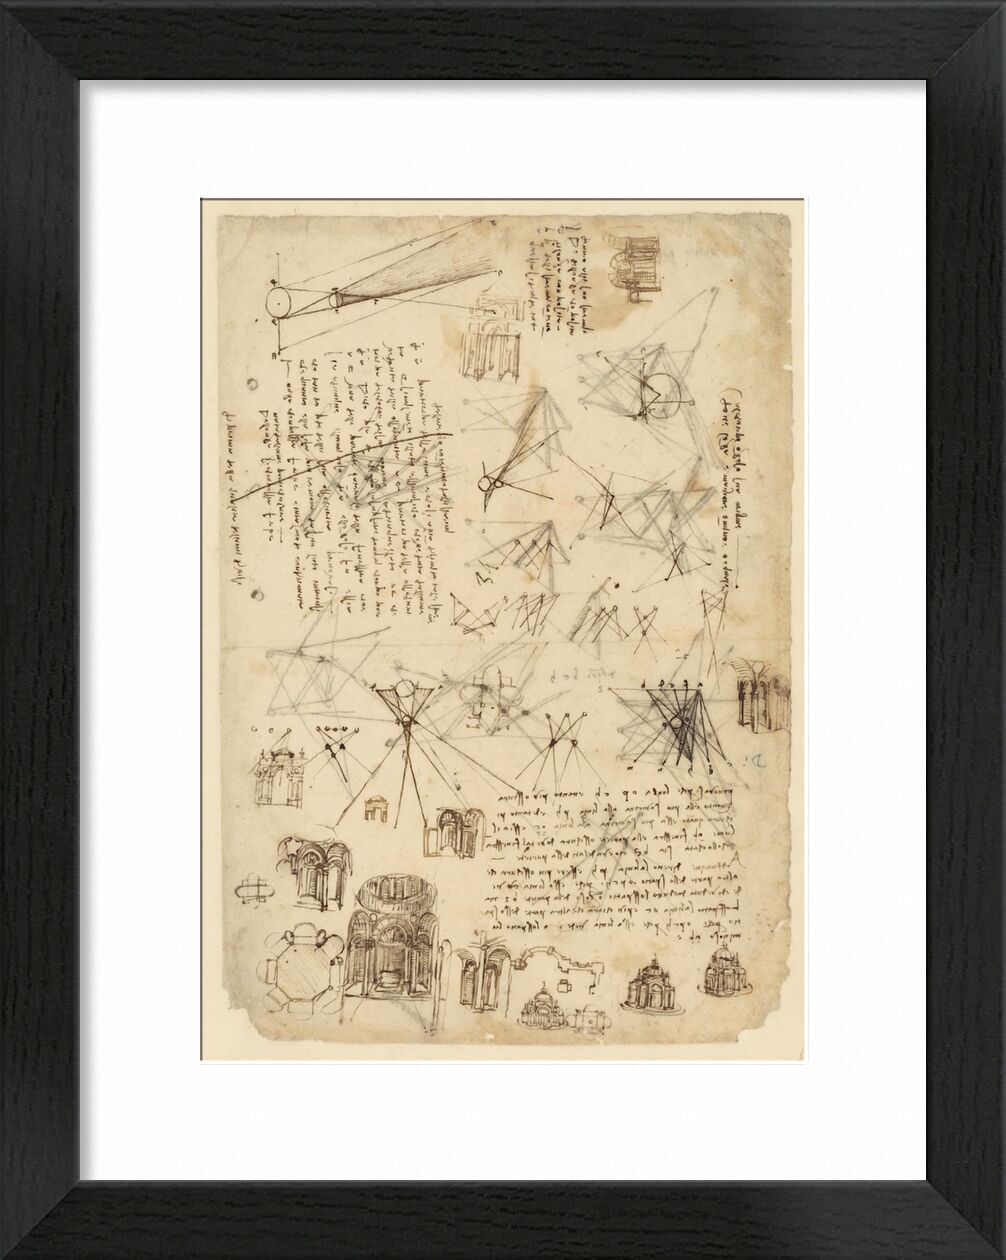 Atlantic codex - Leonardo da Vinci desde Bellas artes, Prodi Art, diagrama, dibujo, Leonard de Vinci